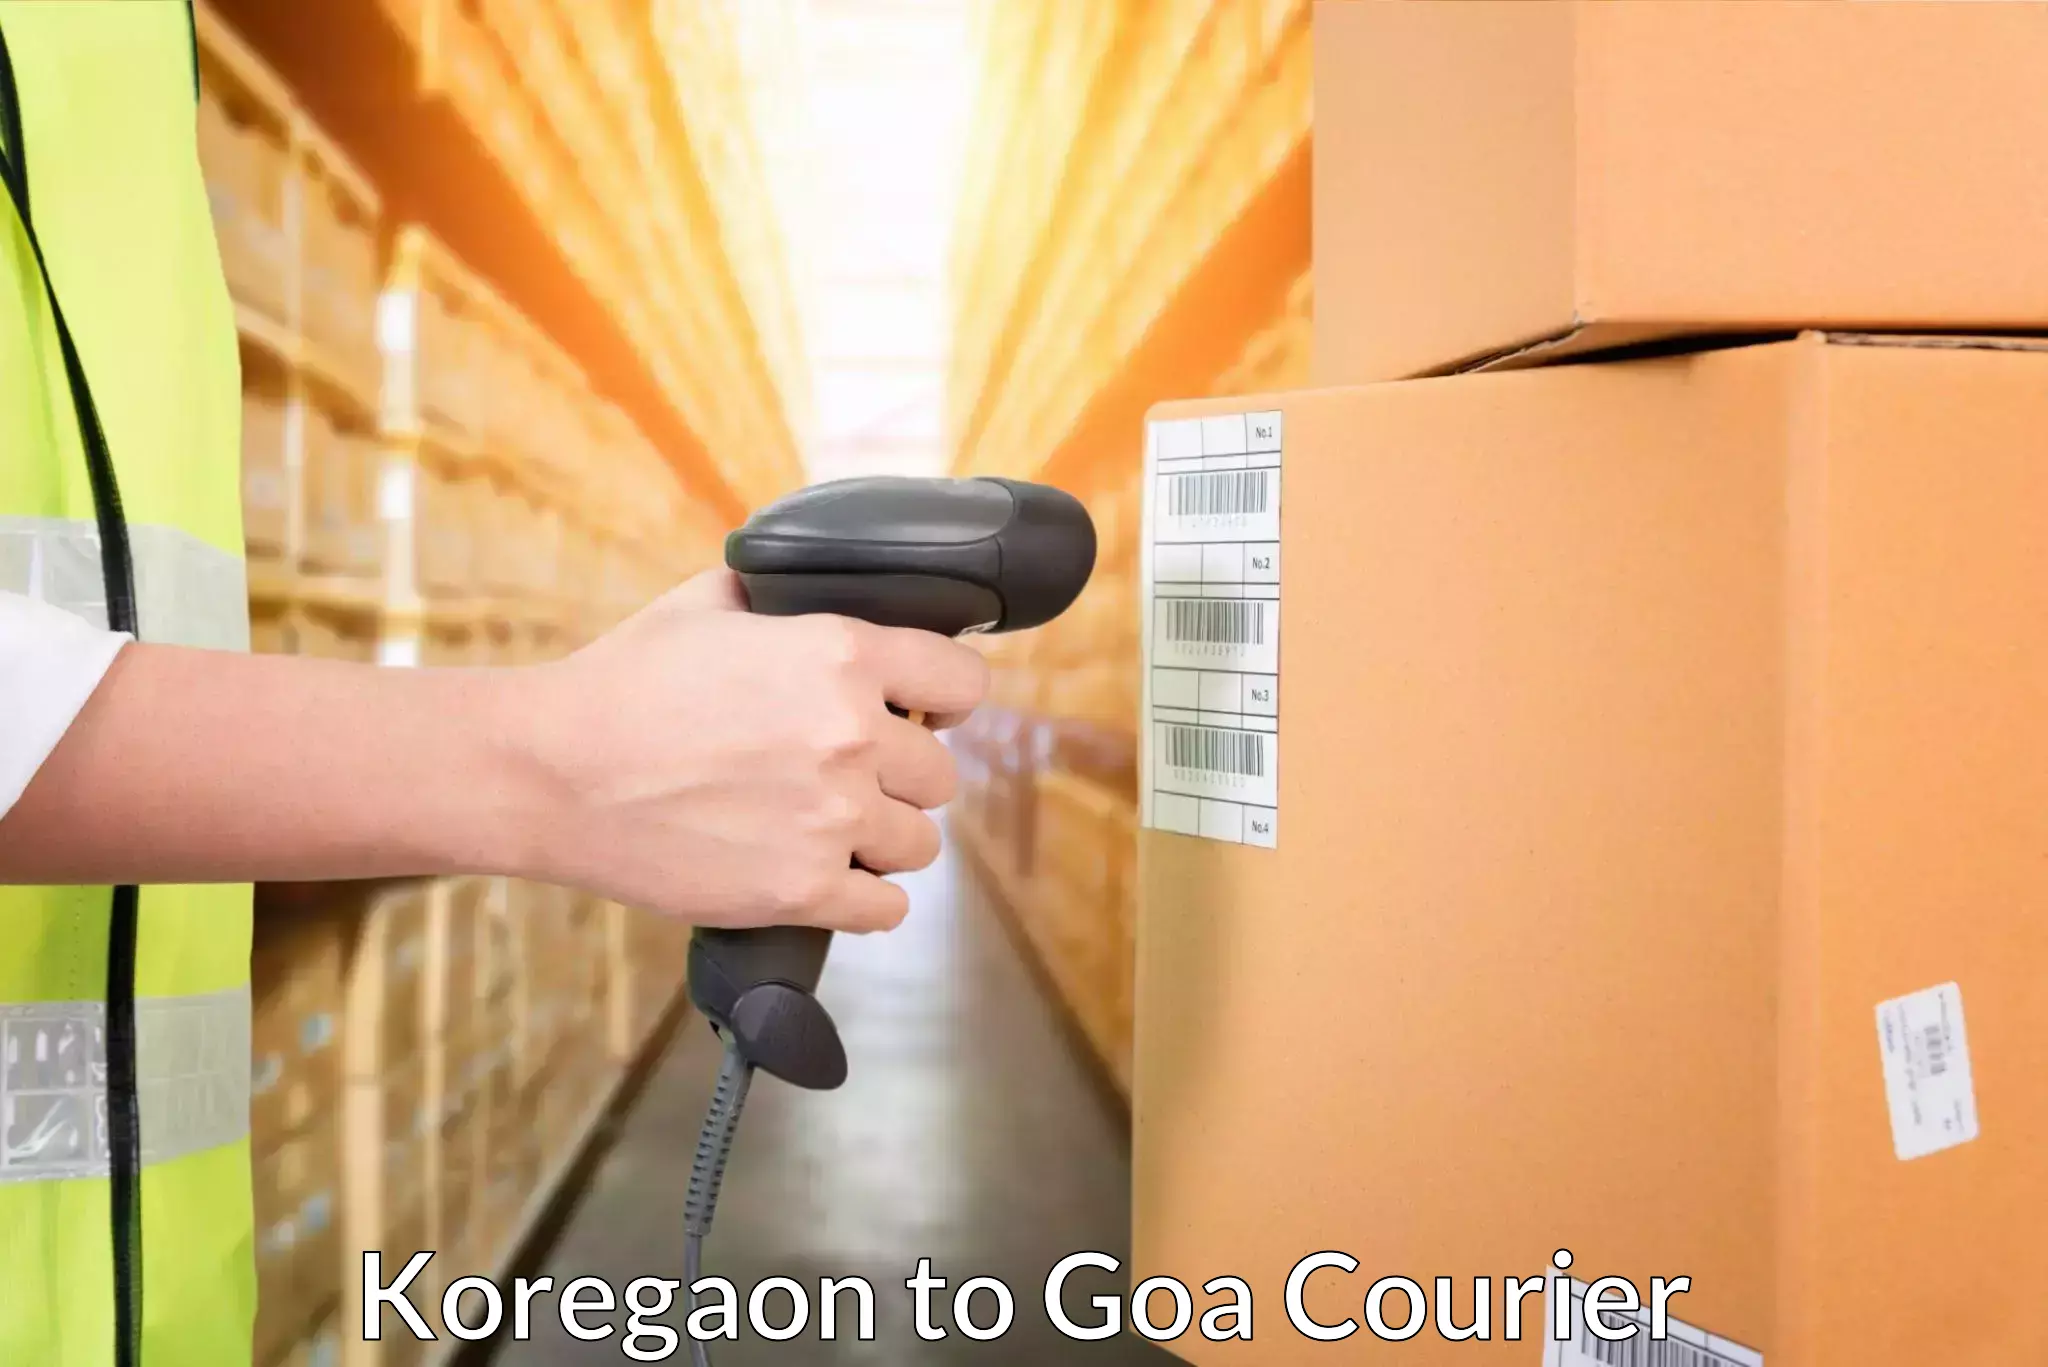 Global freight services Koregaon to South Goa